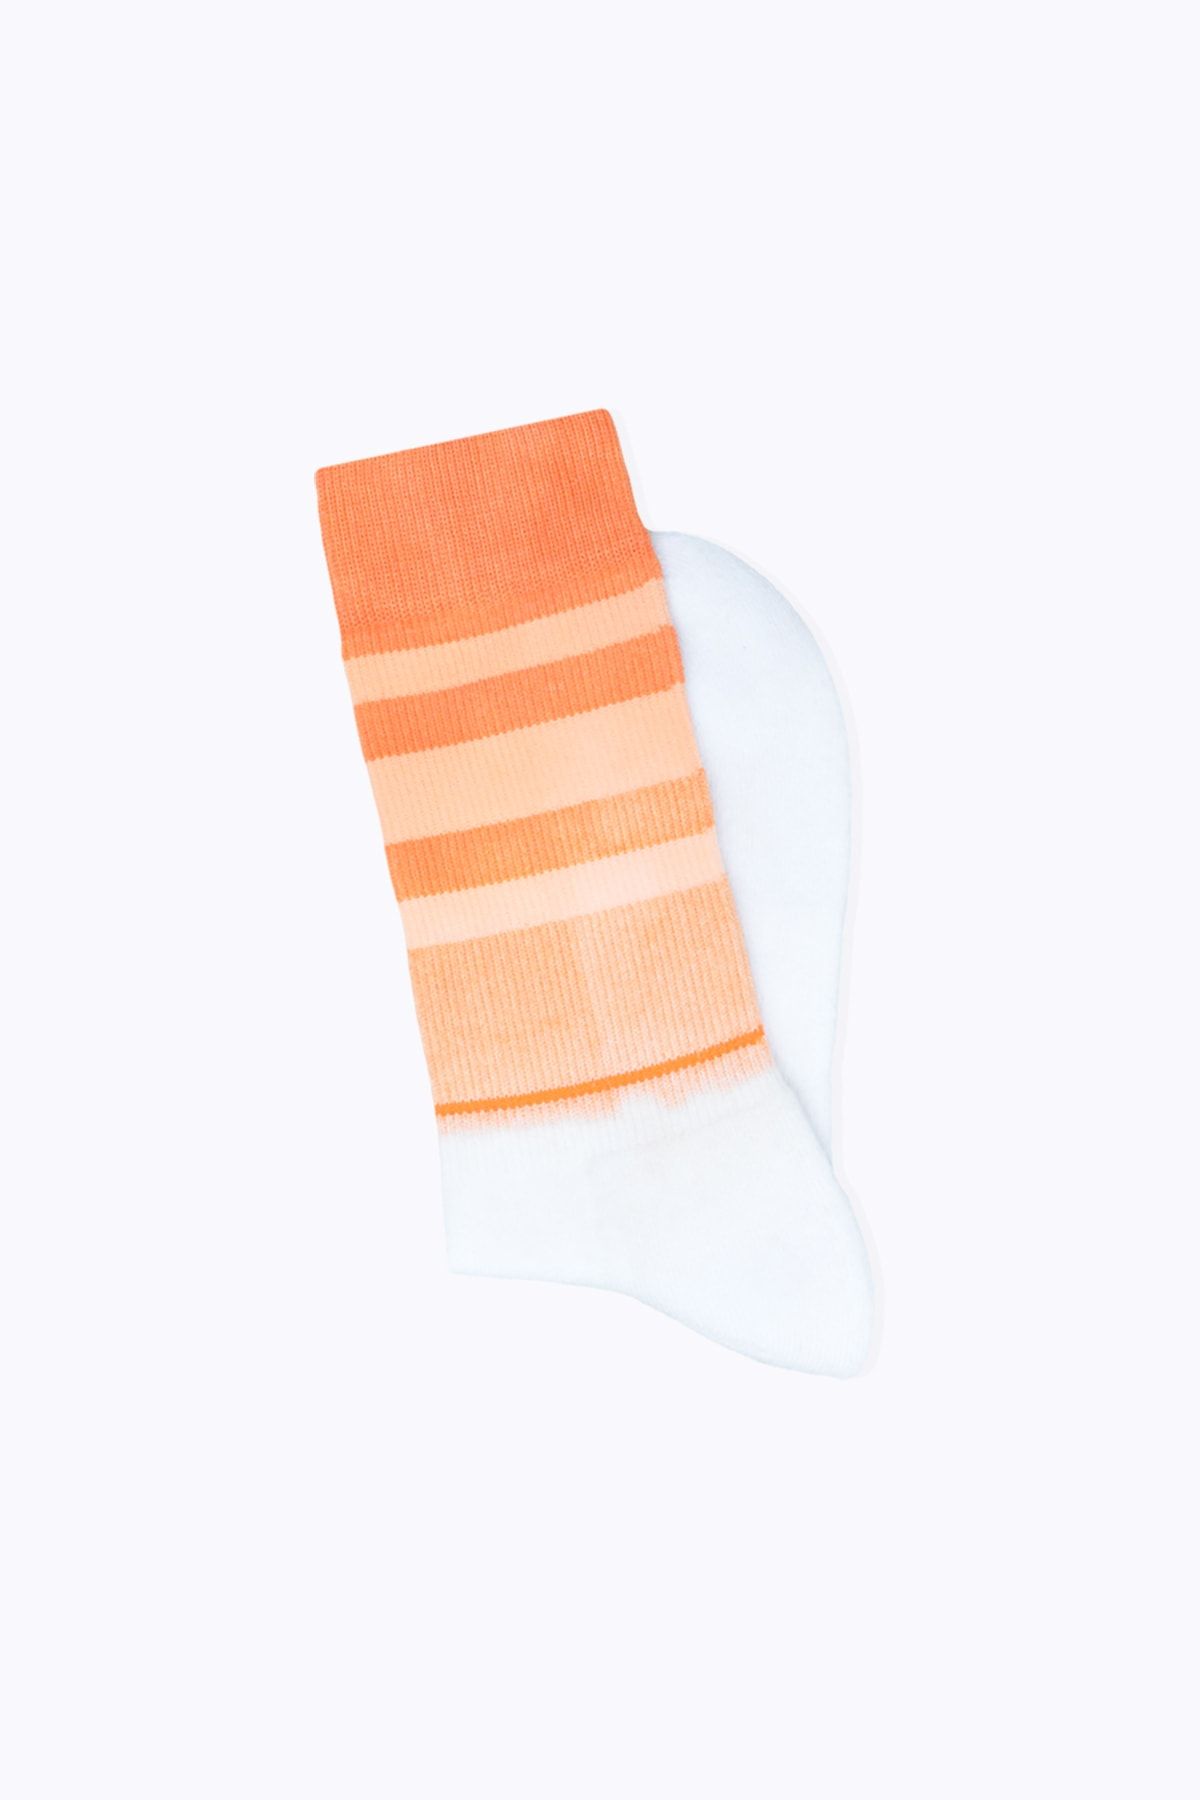 Socks Academy Beyaz Çizgili Havlu Tabanlı Turuncu Ebruli Çorap